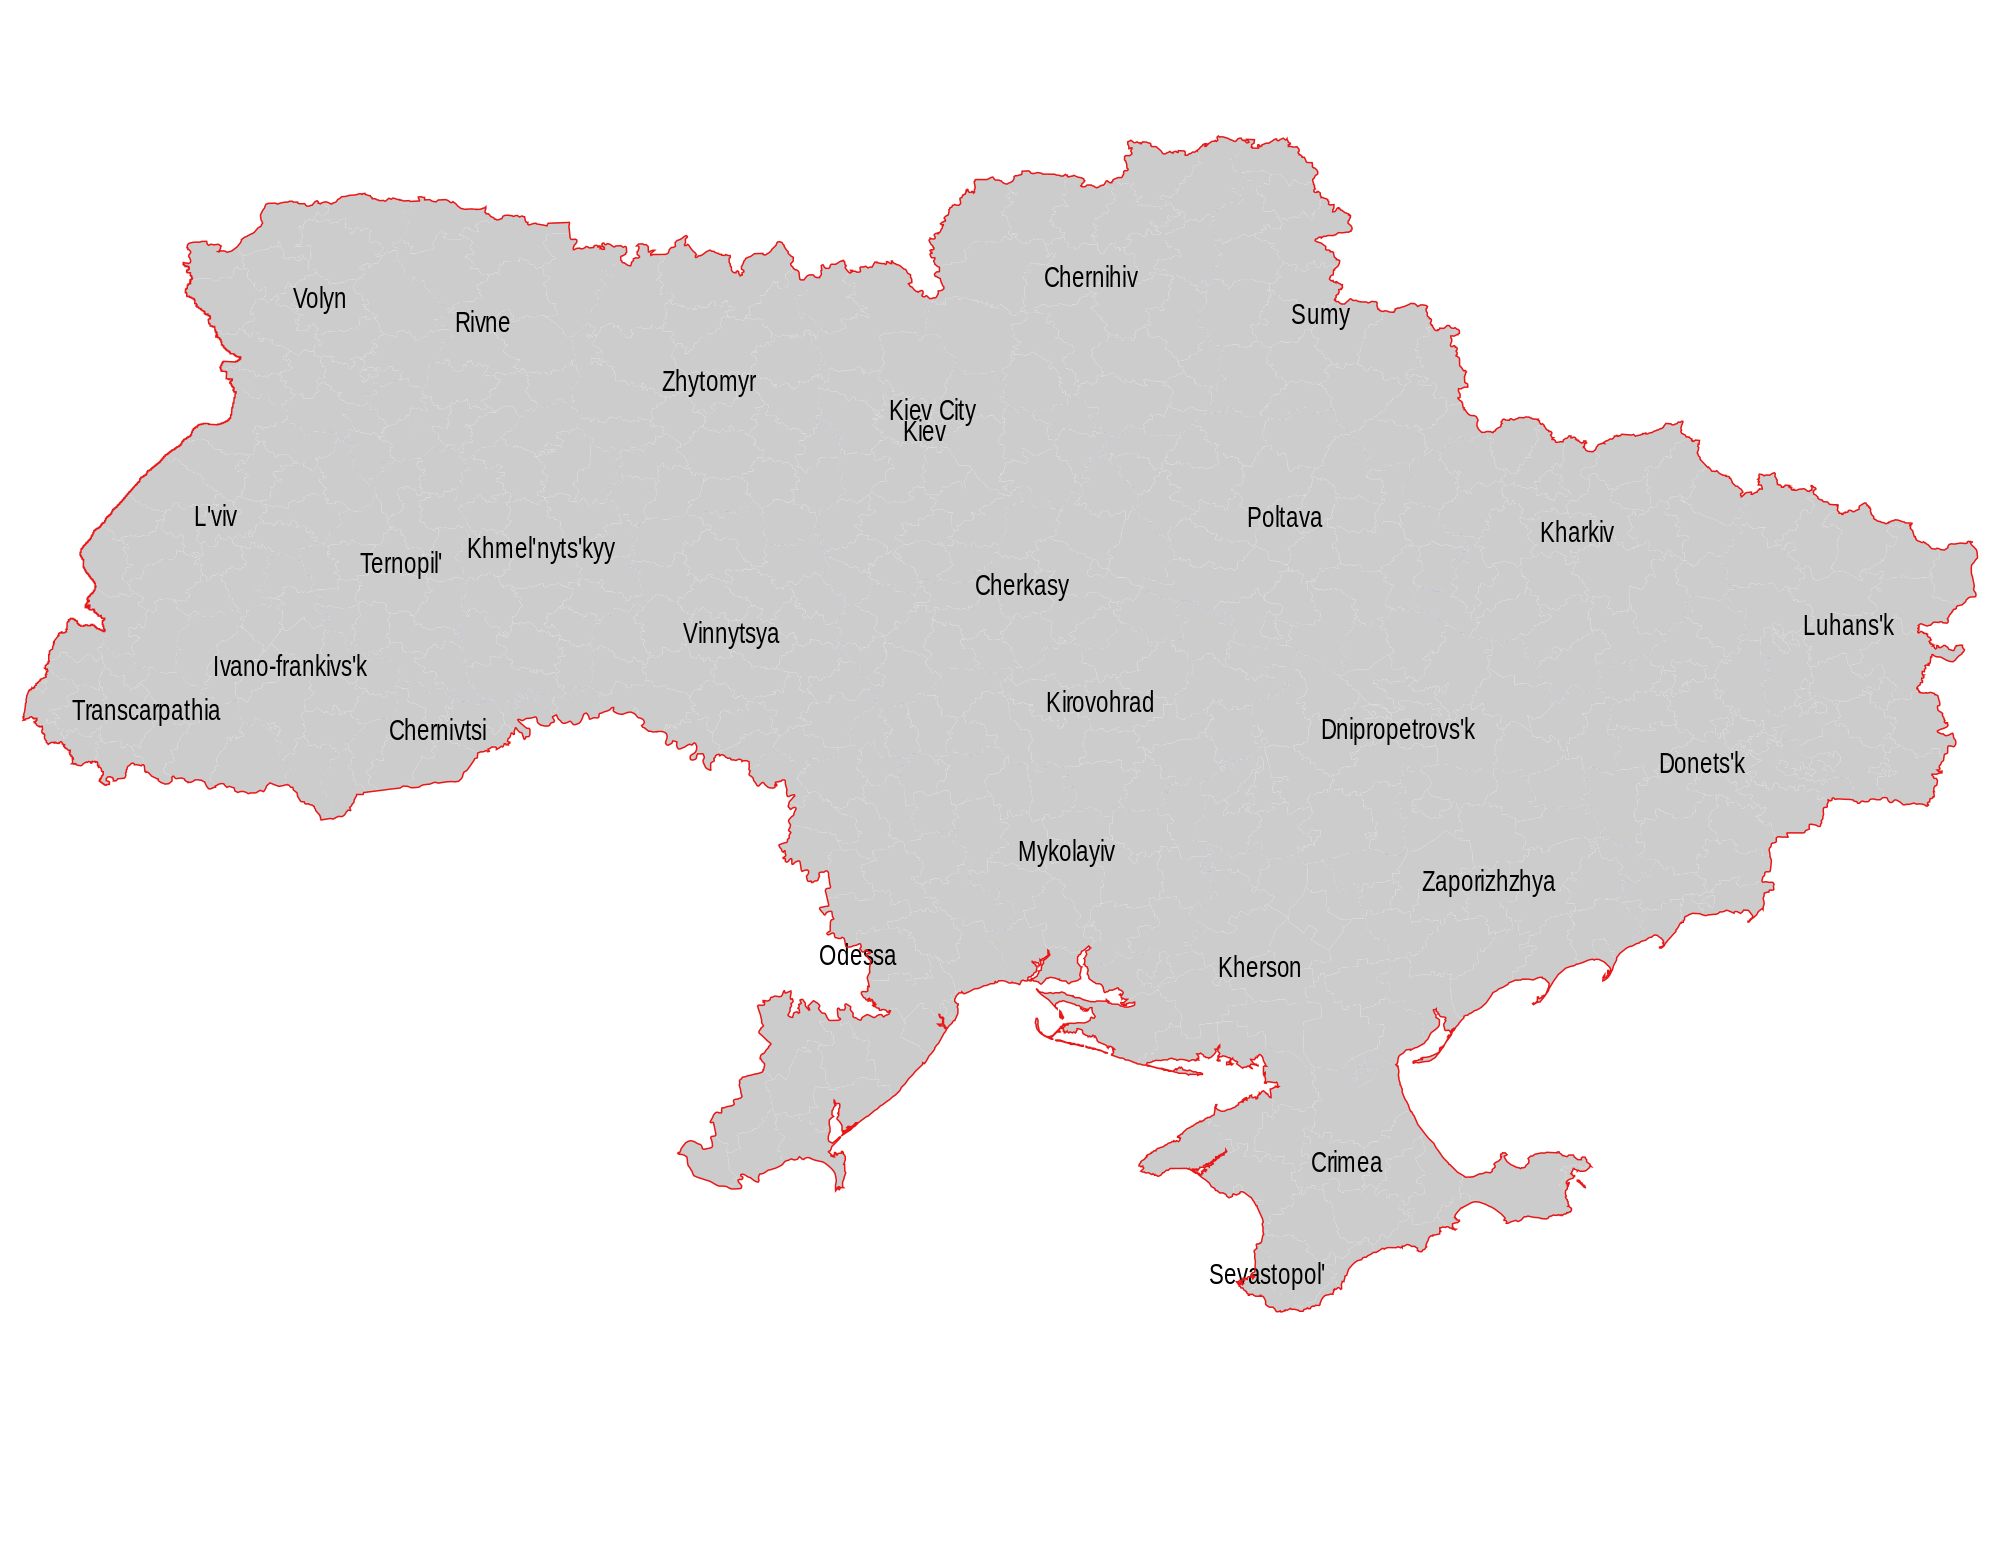 Вікіпедія:Проєкт:Картографія. Україна. SVG - Вікіпедія